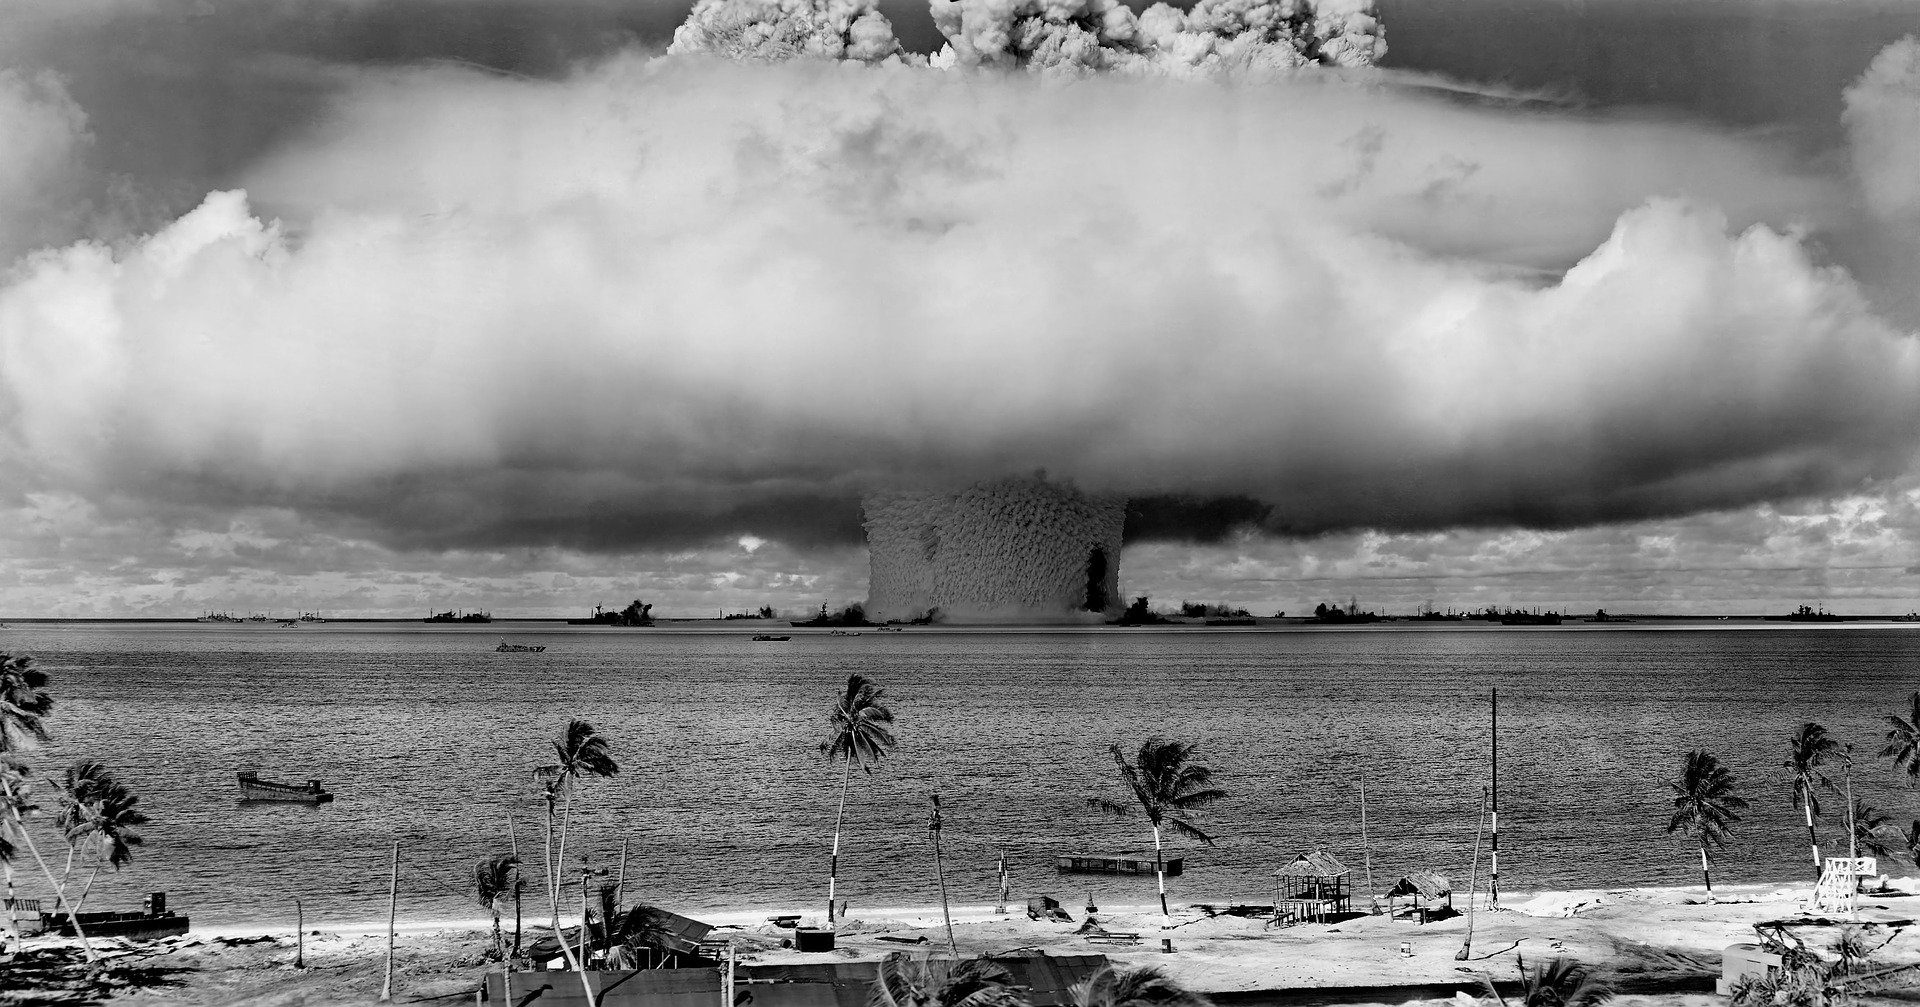 Araştırmacılar, bilgisayar modellemeleri kullanarak bir nükleer patlama meydana geldiğinde neler yapılması gerektiğini incelediler. - nukleer silahlar atom bombasi patlama